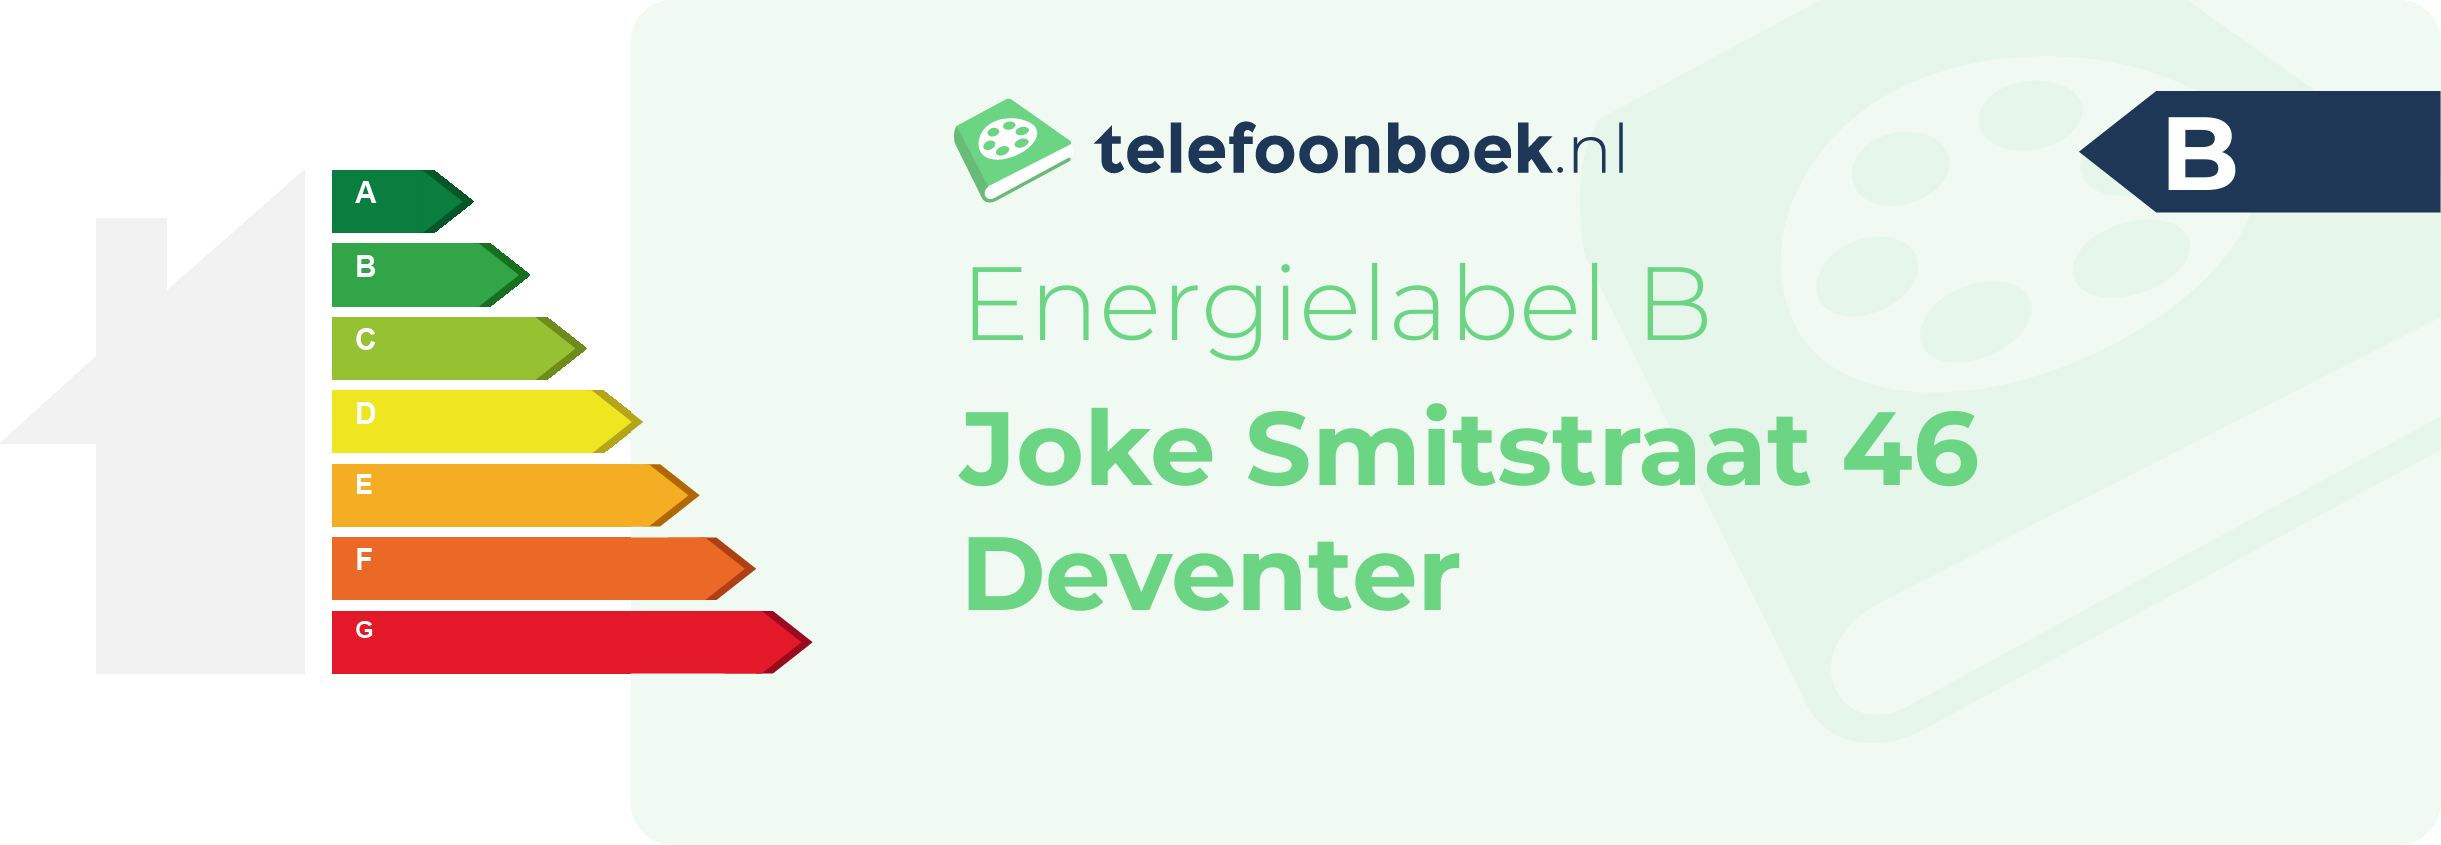 Energielabel Joke Smitstraat 46 Deventer